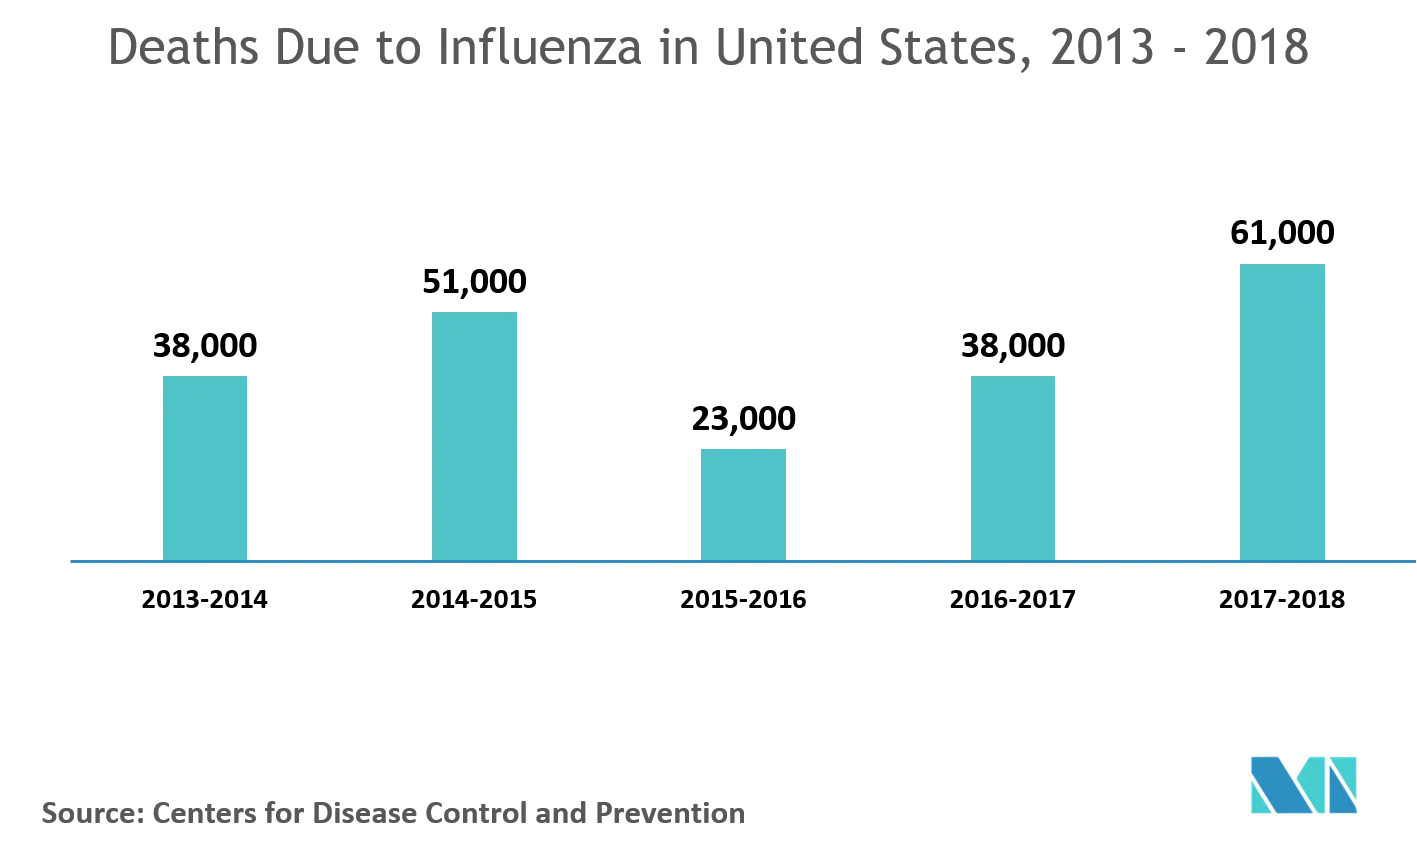 Influenza Medications Market